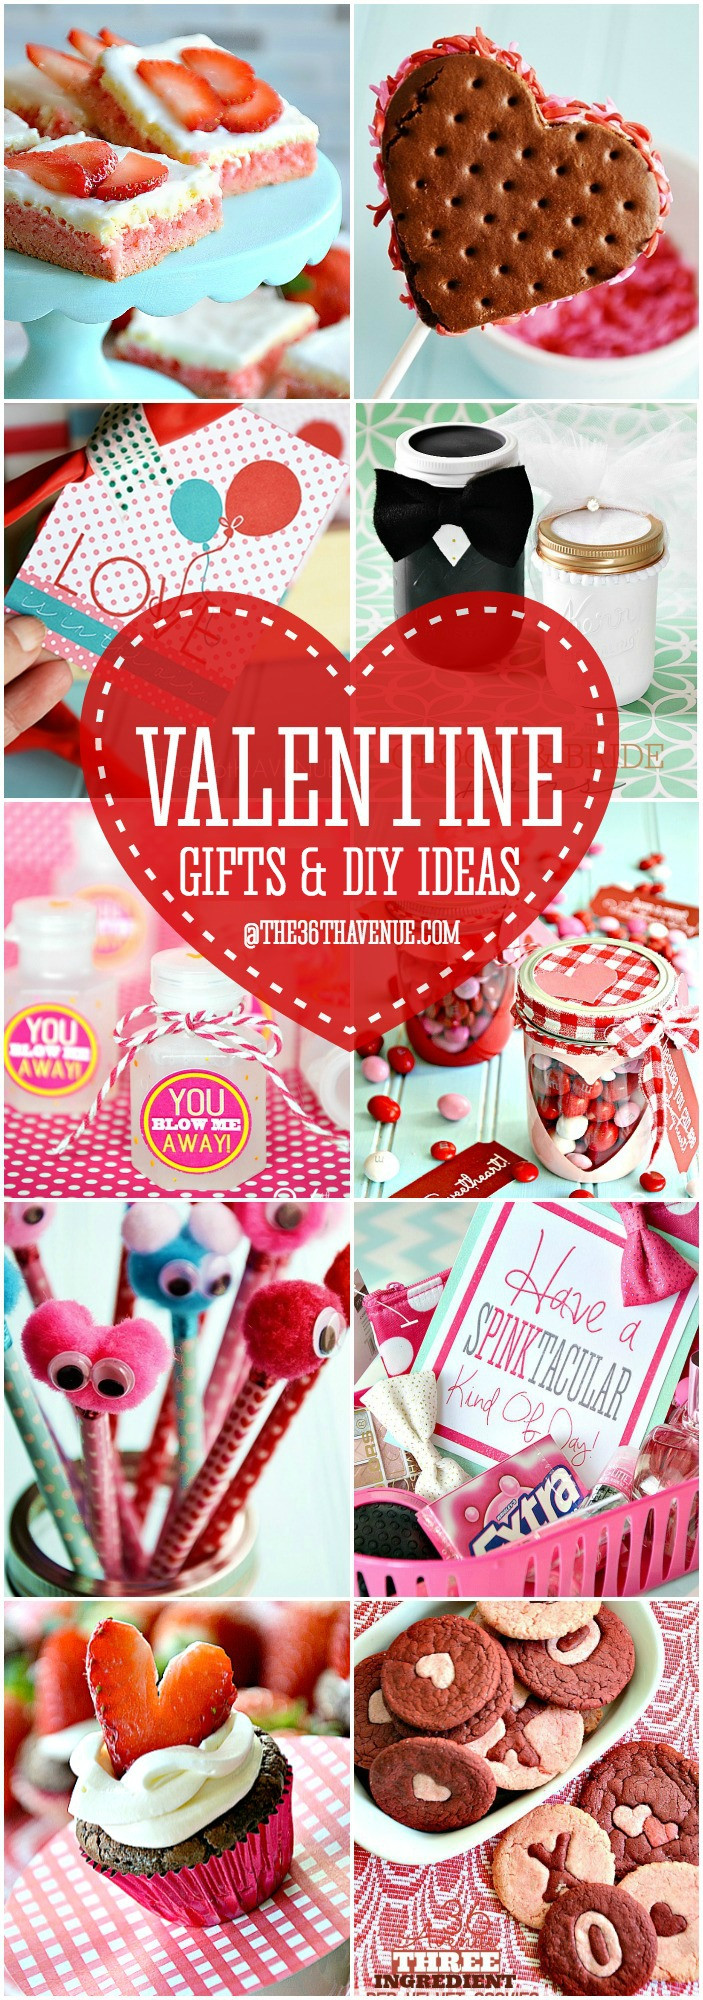 Best ideas about Diy Valentine Gift Ideas
. Save or Pin Adorable Valentine Gift Ideas The 36th AVENUE Now.